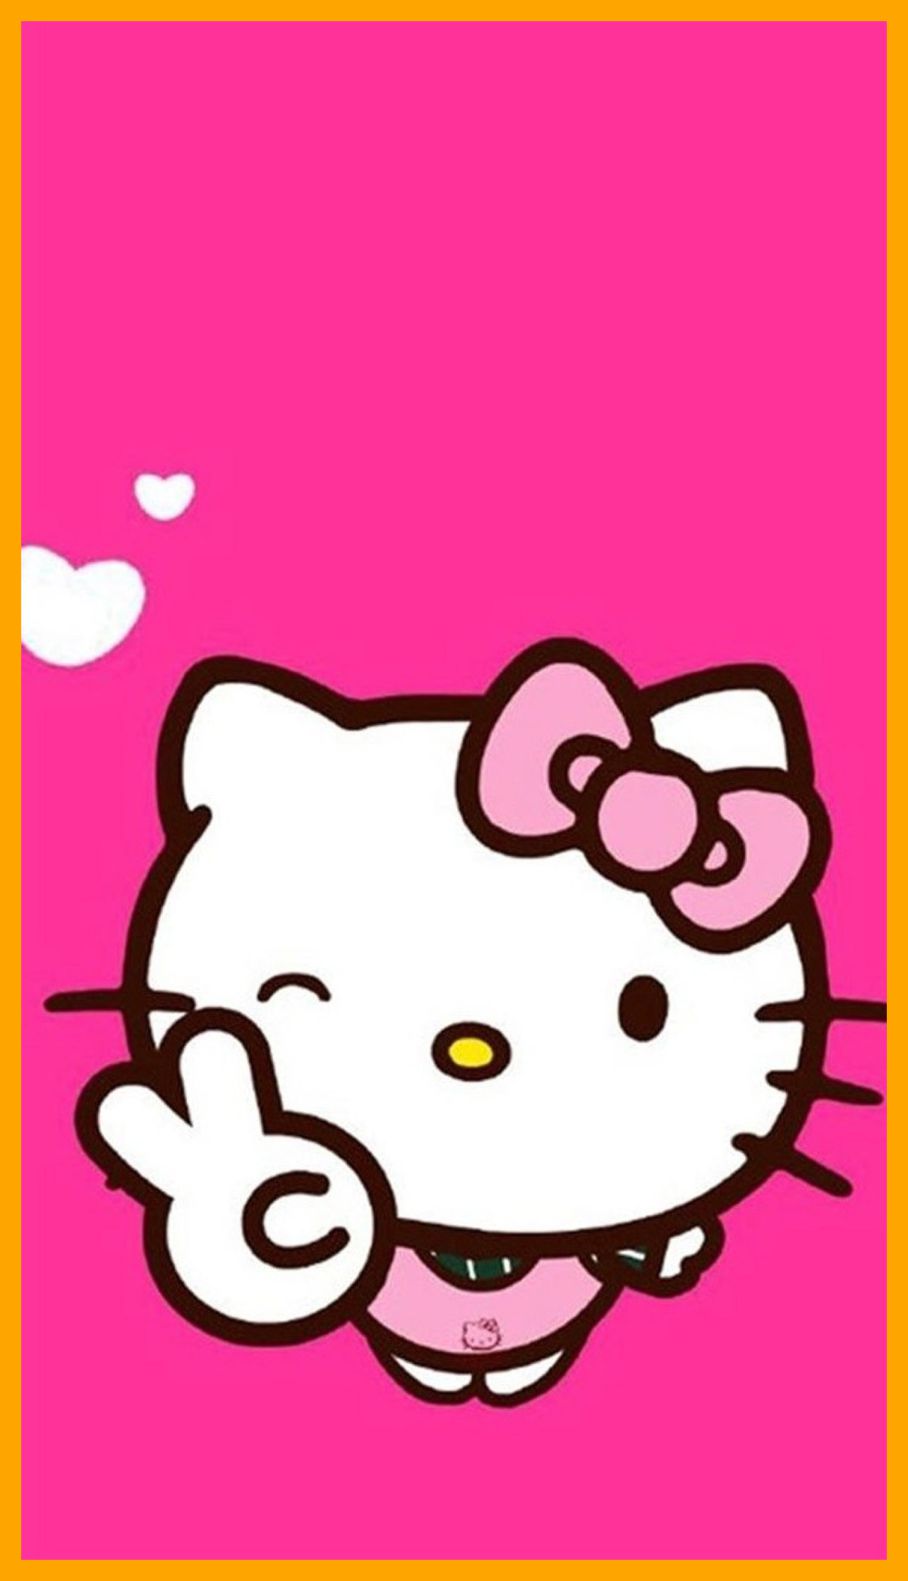 Chào mừng bạn đến với thế giới đáng yêu của Hello Kitty! Hãy xem hình ảnh liên quan đến Hello Kitty để tìm hiểu thêm về nhân vật cực kỳ dễ thương này và khám phá những sản phẩm độc đáo được lấy cảm hứng từ Hello Kitty.